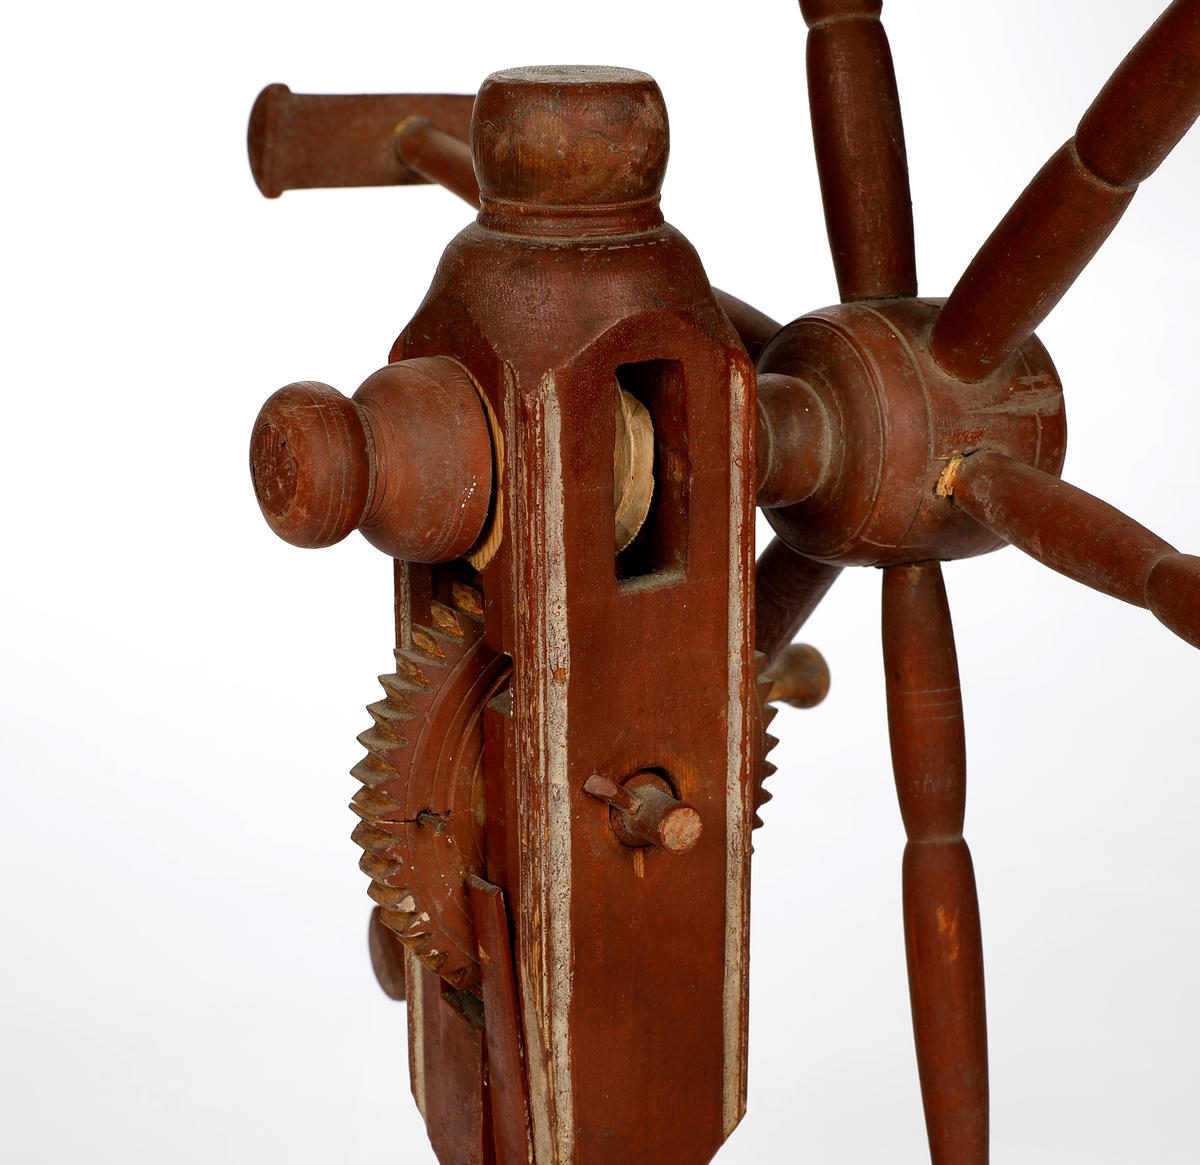 Rødt hespetre med seks armer og telleverk (basmehjul). Foten er utstyrt med garnføringsbøyle og to armer til snelle.